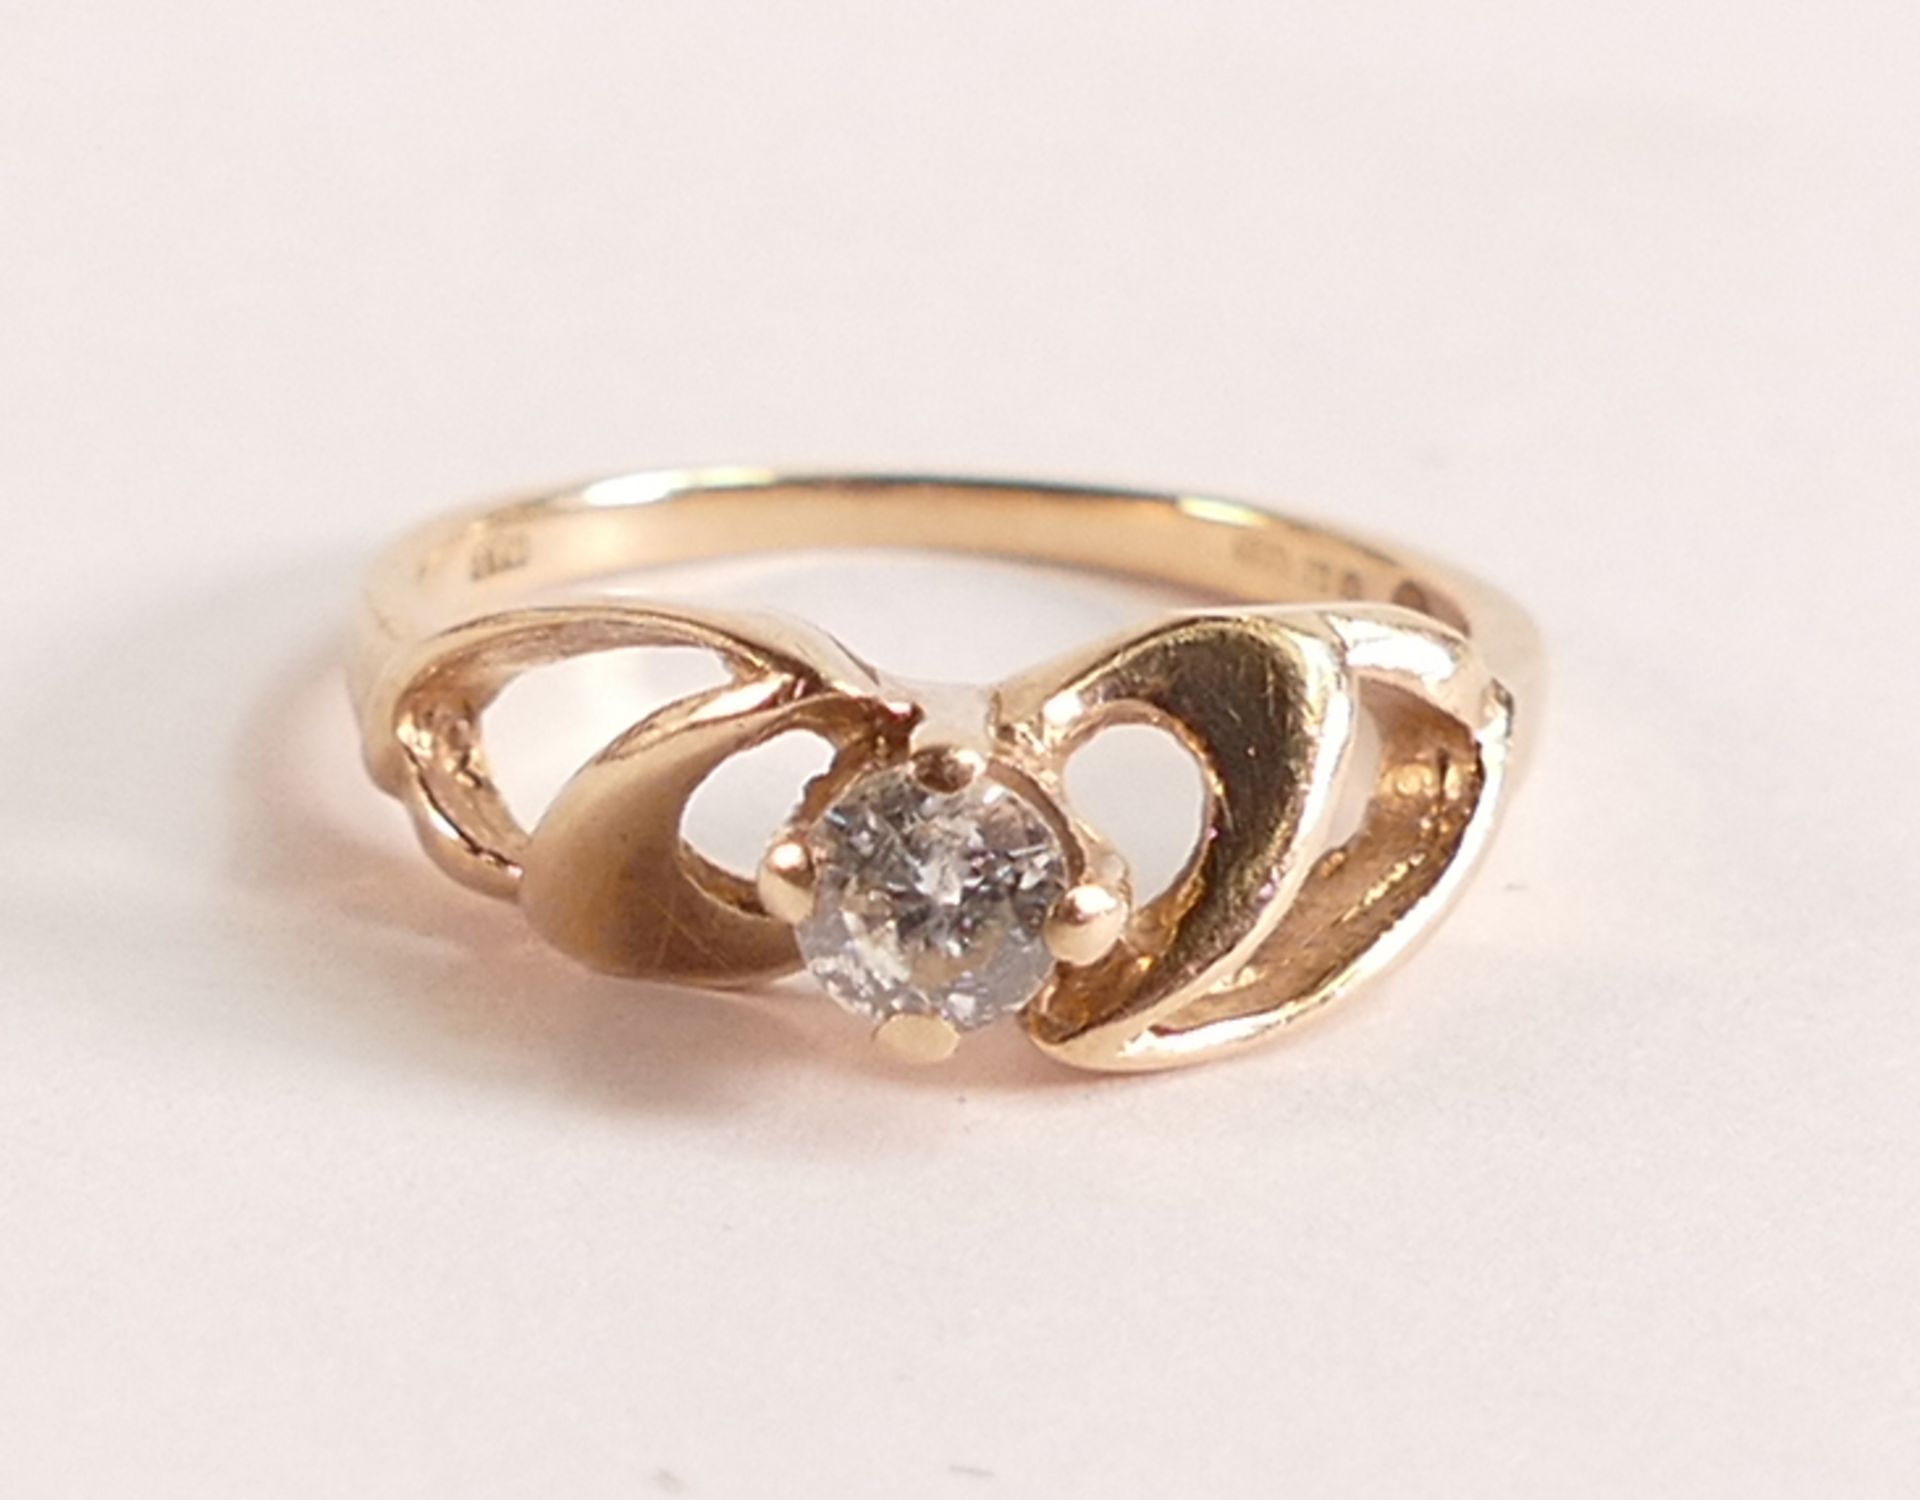 9ct yellow gold diamond ring, 1.9 grams, ring size J.